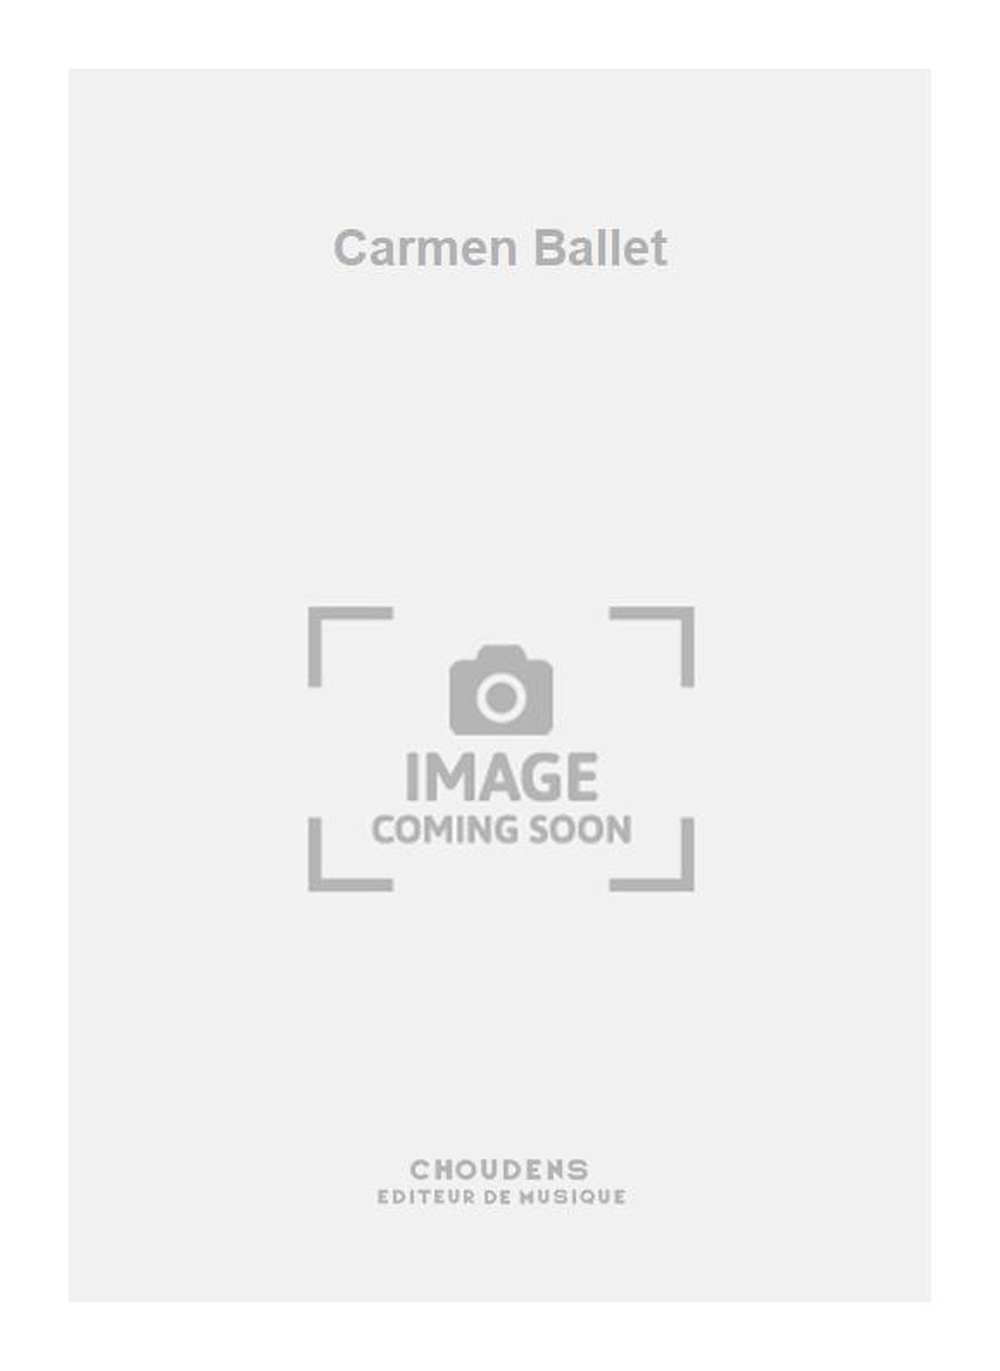 Georges Bizet: Carmen Ballet